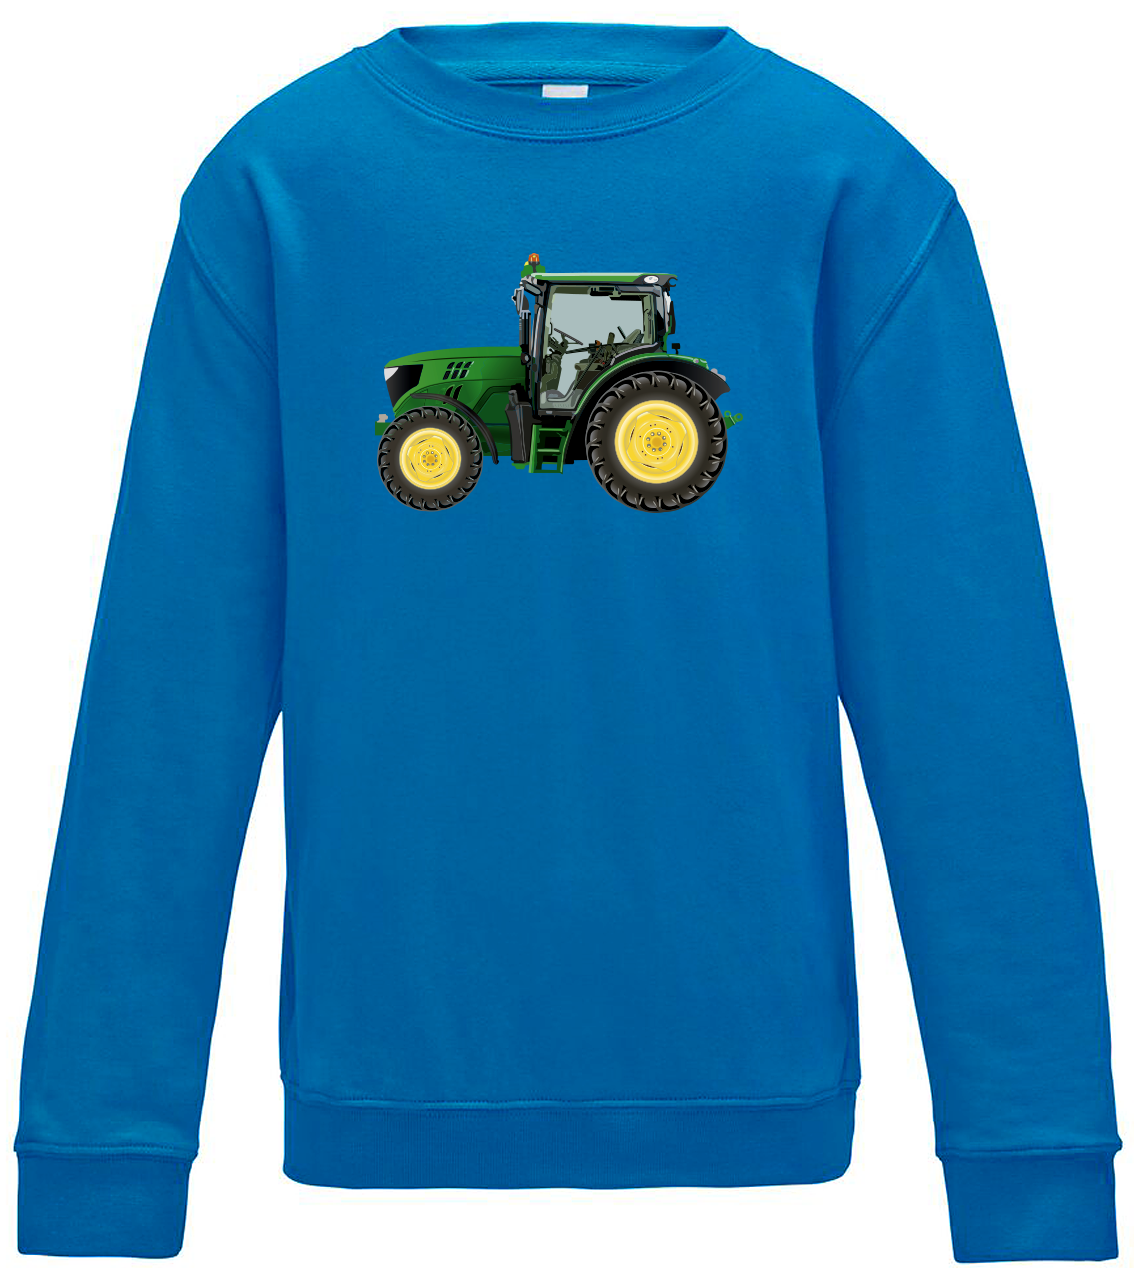 Dětská mikina s traktorem - Zelený traktor Velikost: 7/8 (122/128), Barva: Modrá